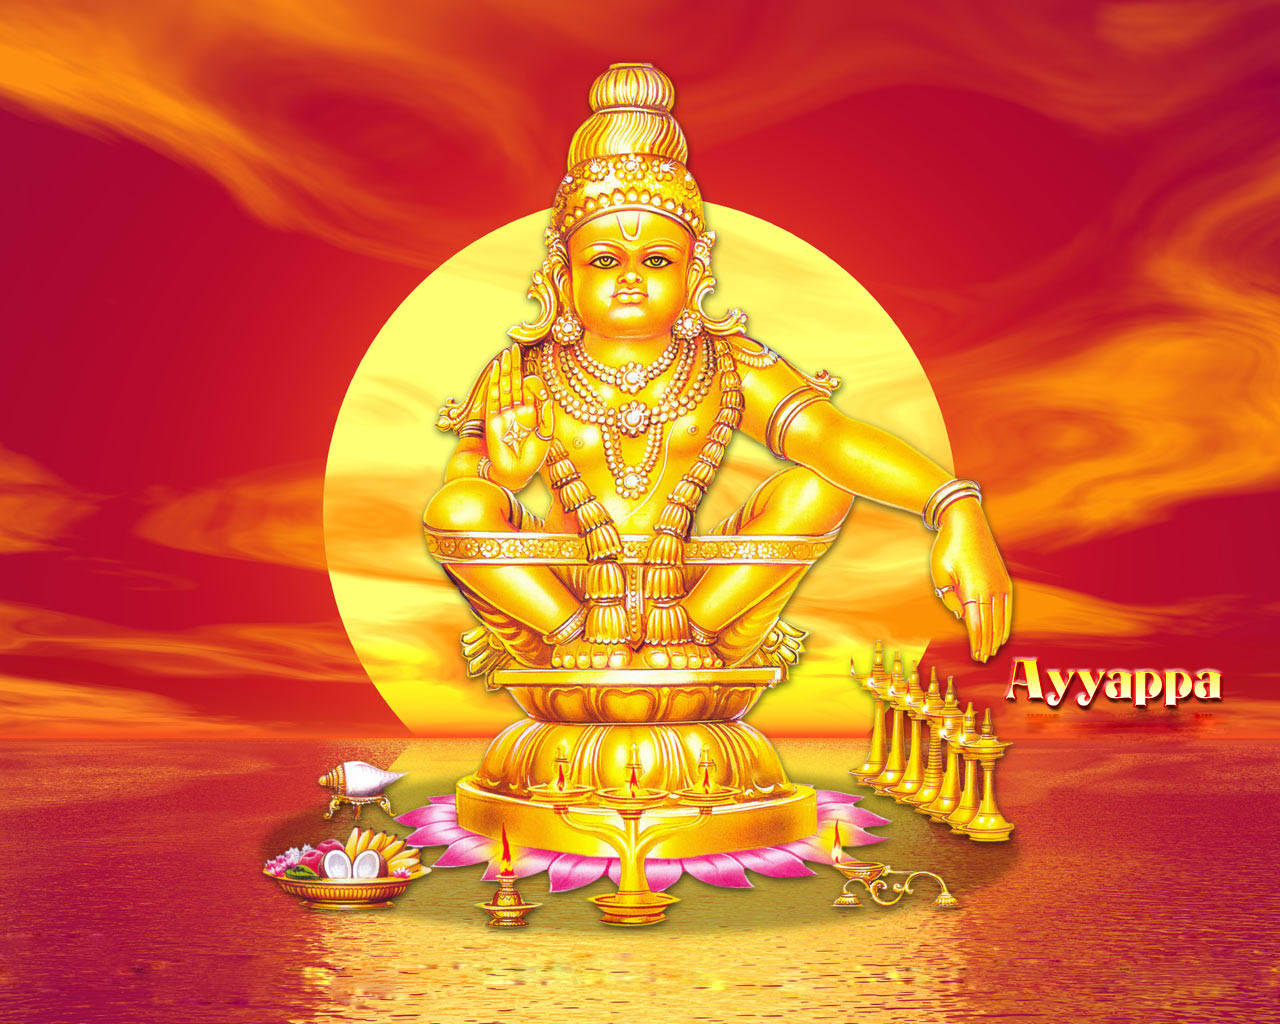 Guld Ayyappan solsikke mønster baggrundsbillede Wallpaper